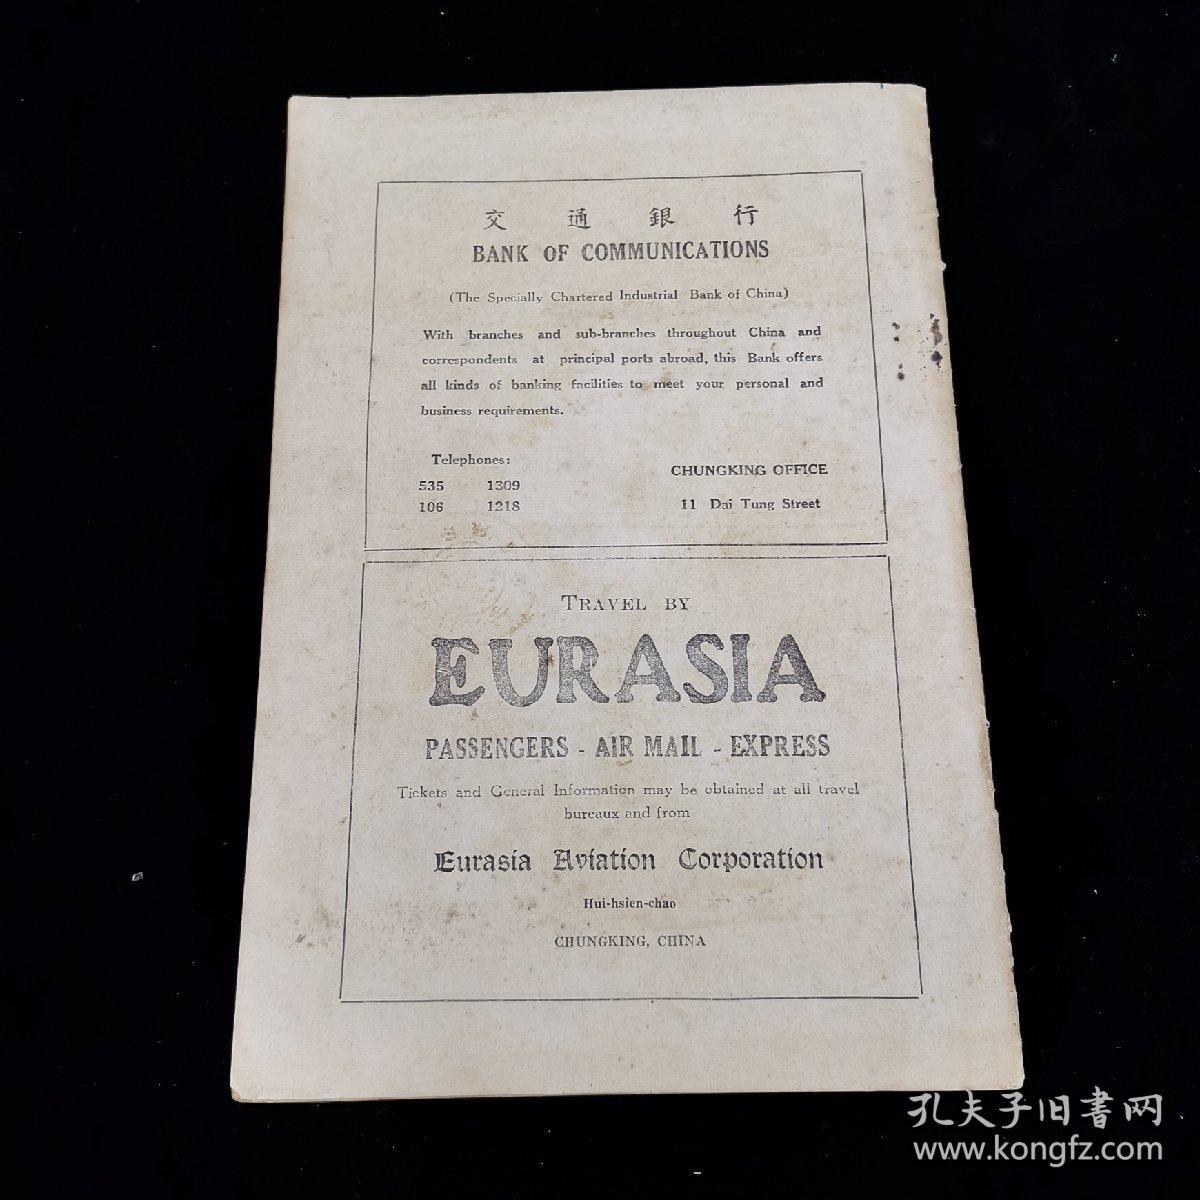 稀见民国期刊《中华论坛周刊》 CHINA FORUM A Weekly Review Vol.III  No.5  Apr 8, 1939，1939年4月出版